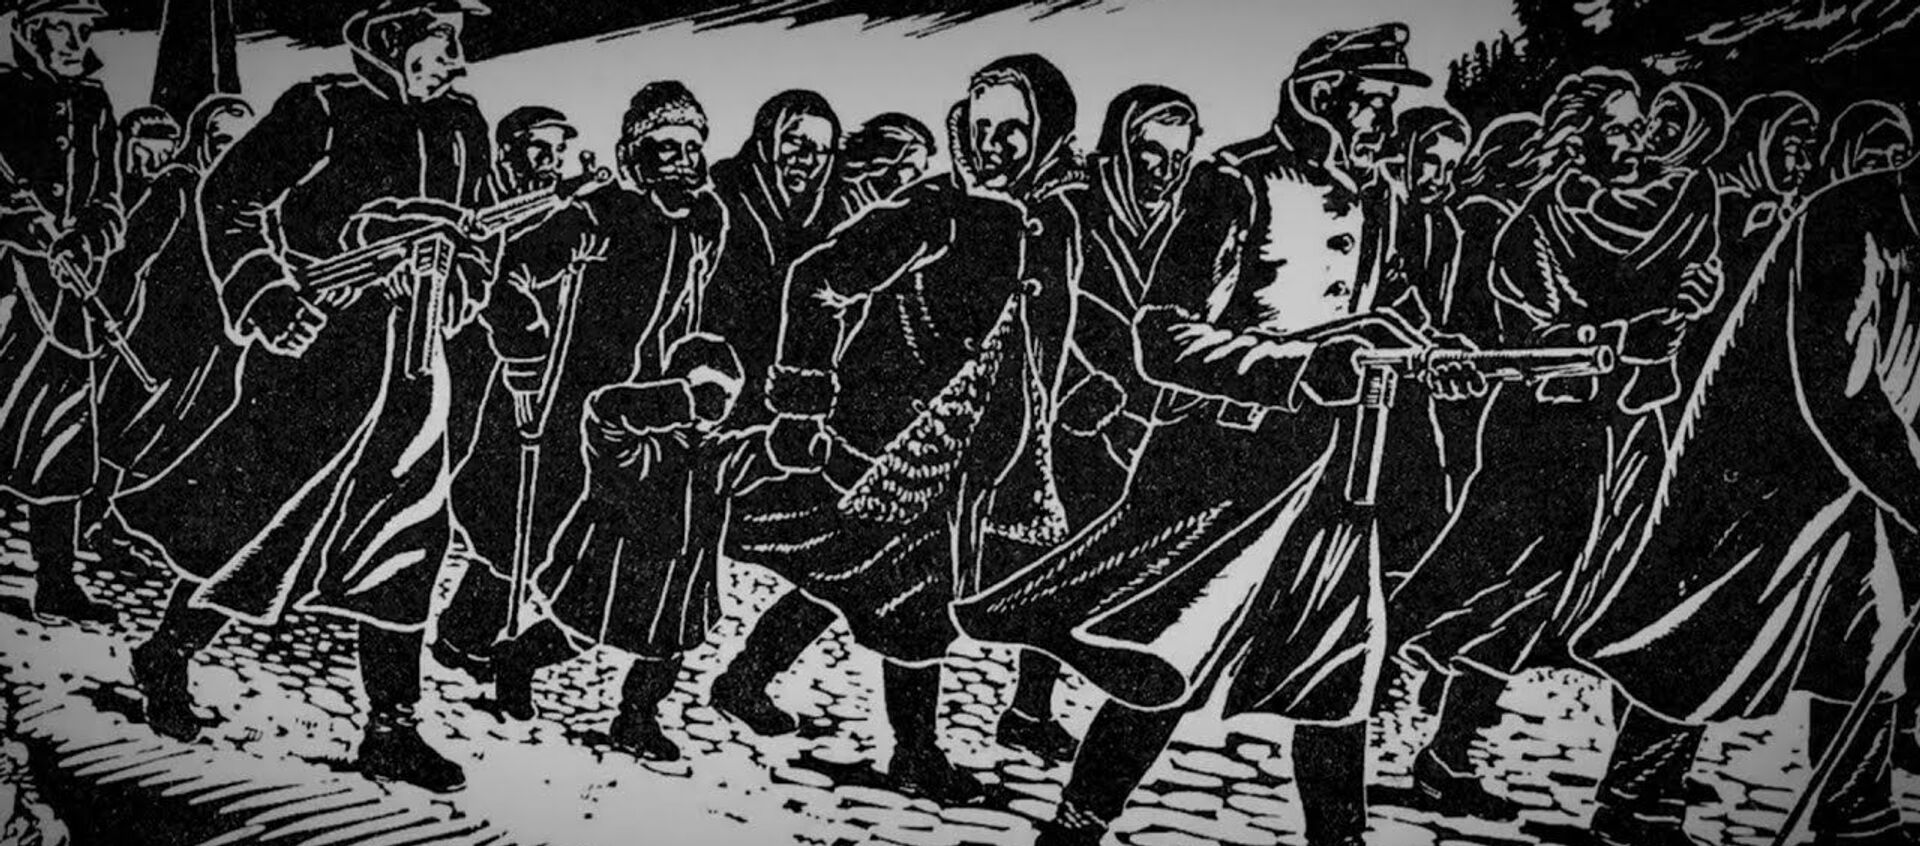 Там вся земля в этих трупах: узница Саласпилса поделилась страшными воспоминаниями - Sputnik Latvija, 1920, 04.10.2020